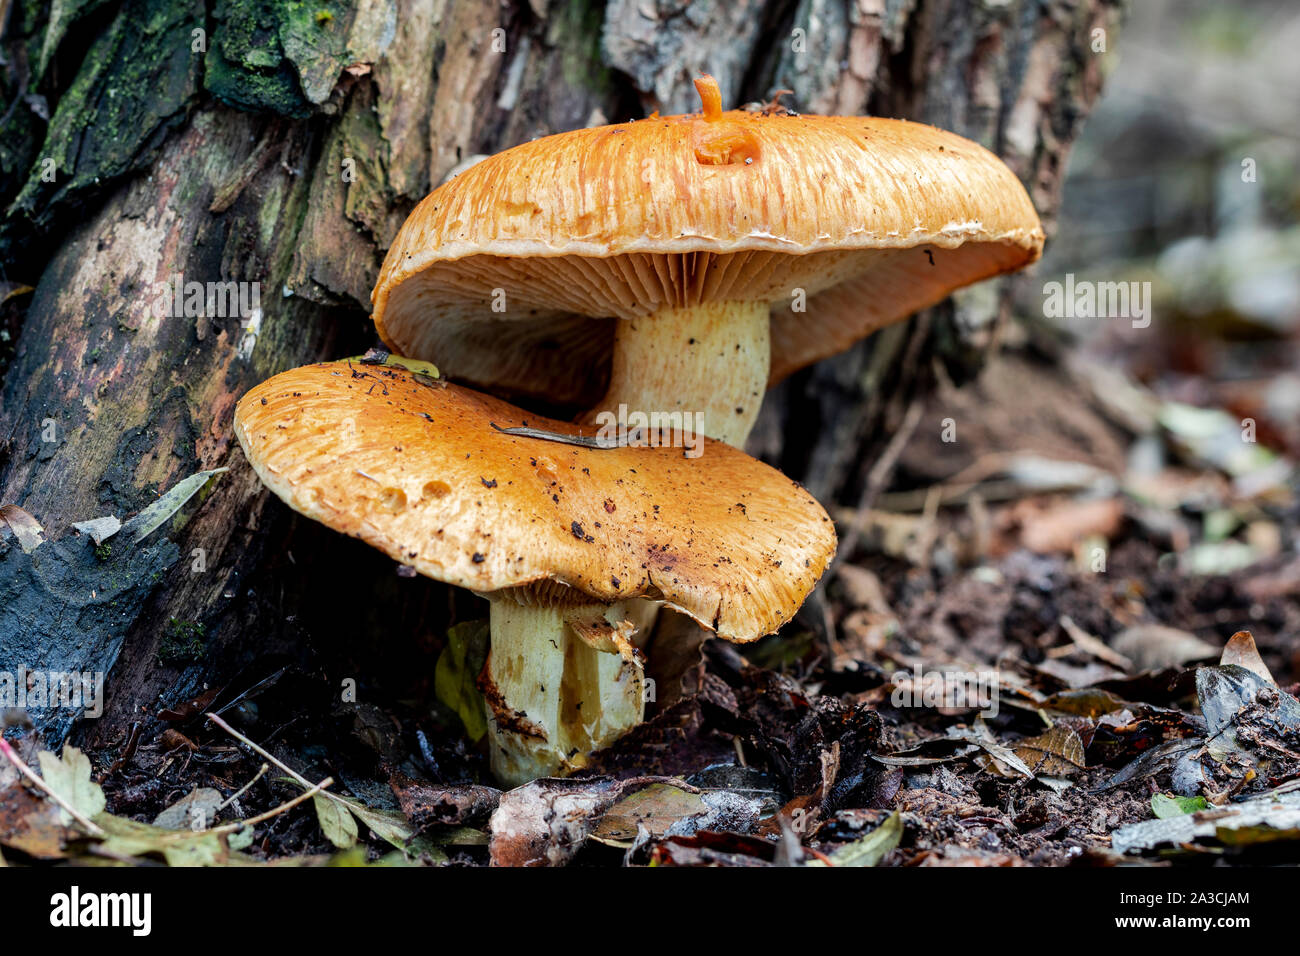 Orange fungus, gymnopilus spectabilis, that grows on a tree trunk. Spain Stock Photo